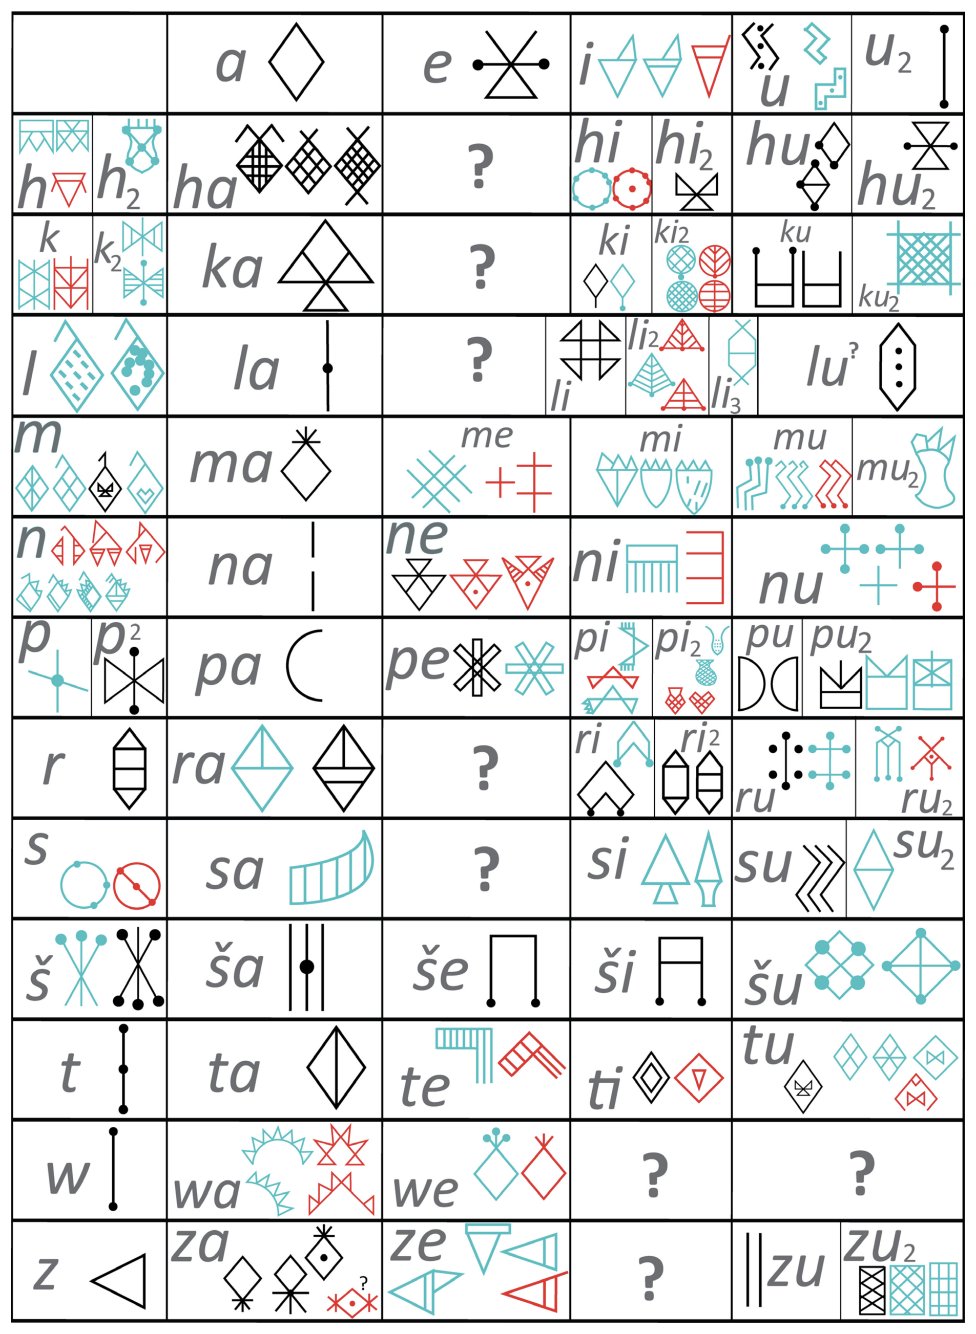 ក្រឡាចត្រង្គនៃ 72 សញ្ញា alpha-syllabic deciphered ដែលប្រព័ន្ធបំប្លែងអក្សរនៃ Linear Elamite ត្រូវបានផ្អែកលើ។ វ៉ារ្យ៉ង់ក្រាហ្វិកទូទៅបំផុតត្រូវបានបង្ហាញសម្រាប់សញ្ញានីមួយៗ។ សញ្ញាពណ៌ខៀវត្រូវបានបញ្ជាក់នៅភាគនិរតីអ៊ីរ៉ង់ សញ្ញាពណ៌ក្រហមនៅភាគអាគ្នេយ៍អ៊ីរ៉ង់។ សញ្ញាខ្មៅគឺជារឿងធម្មតាសម្រាប់តំបន់ទាំងពីរ។ F. Desset